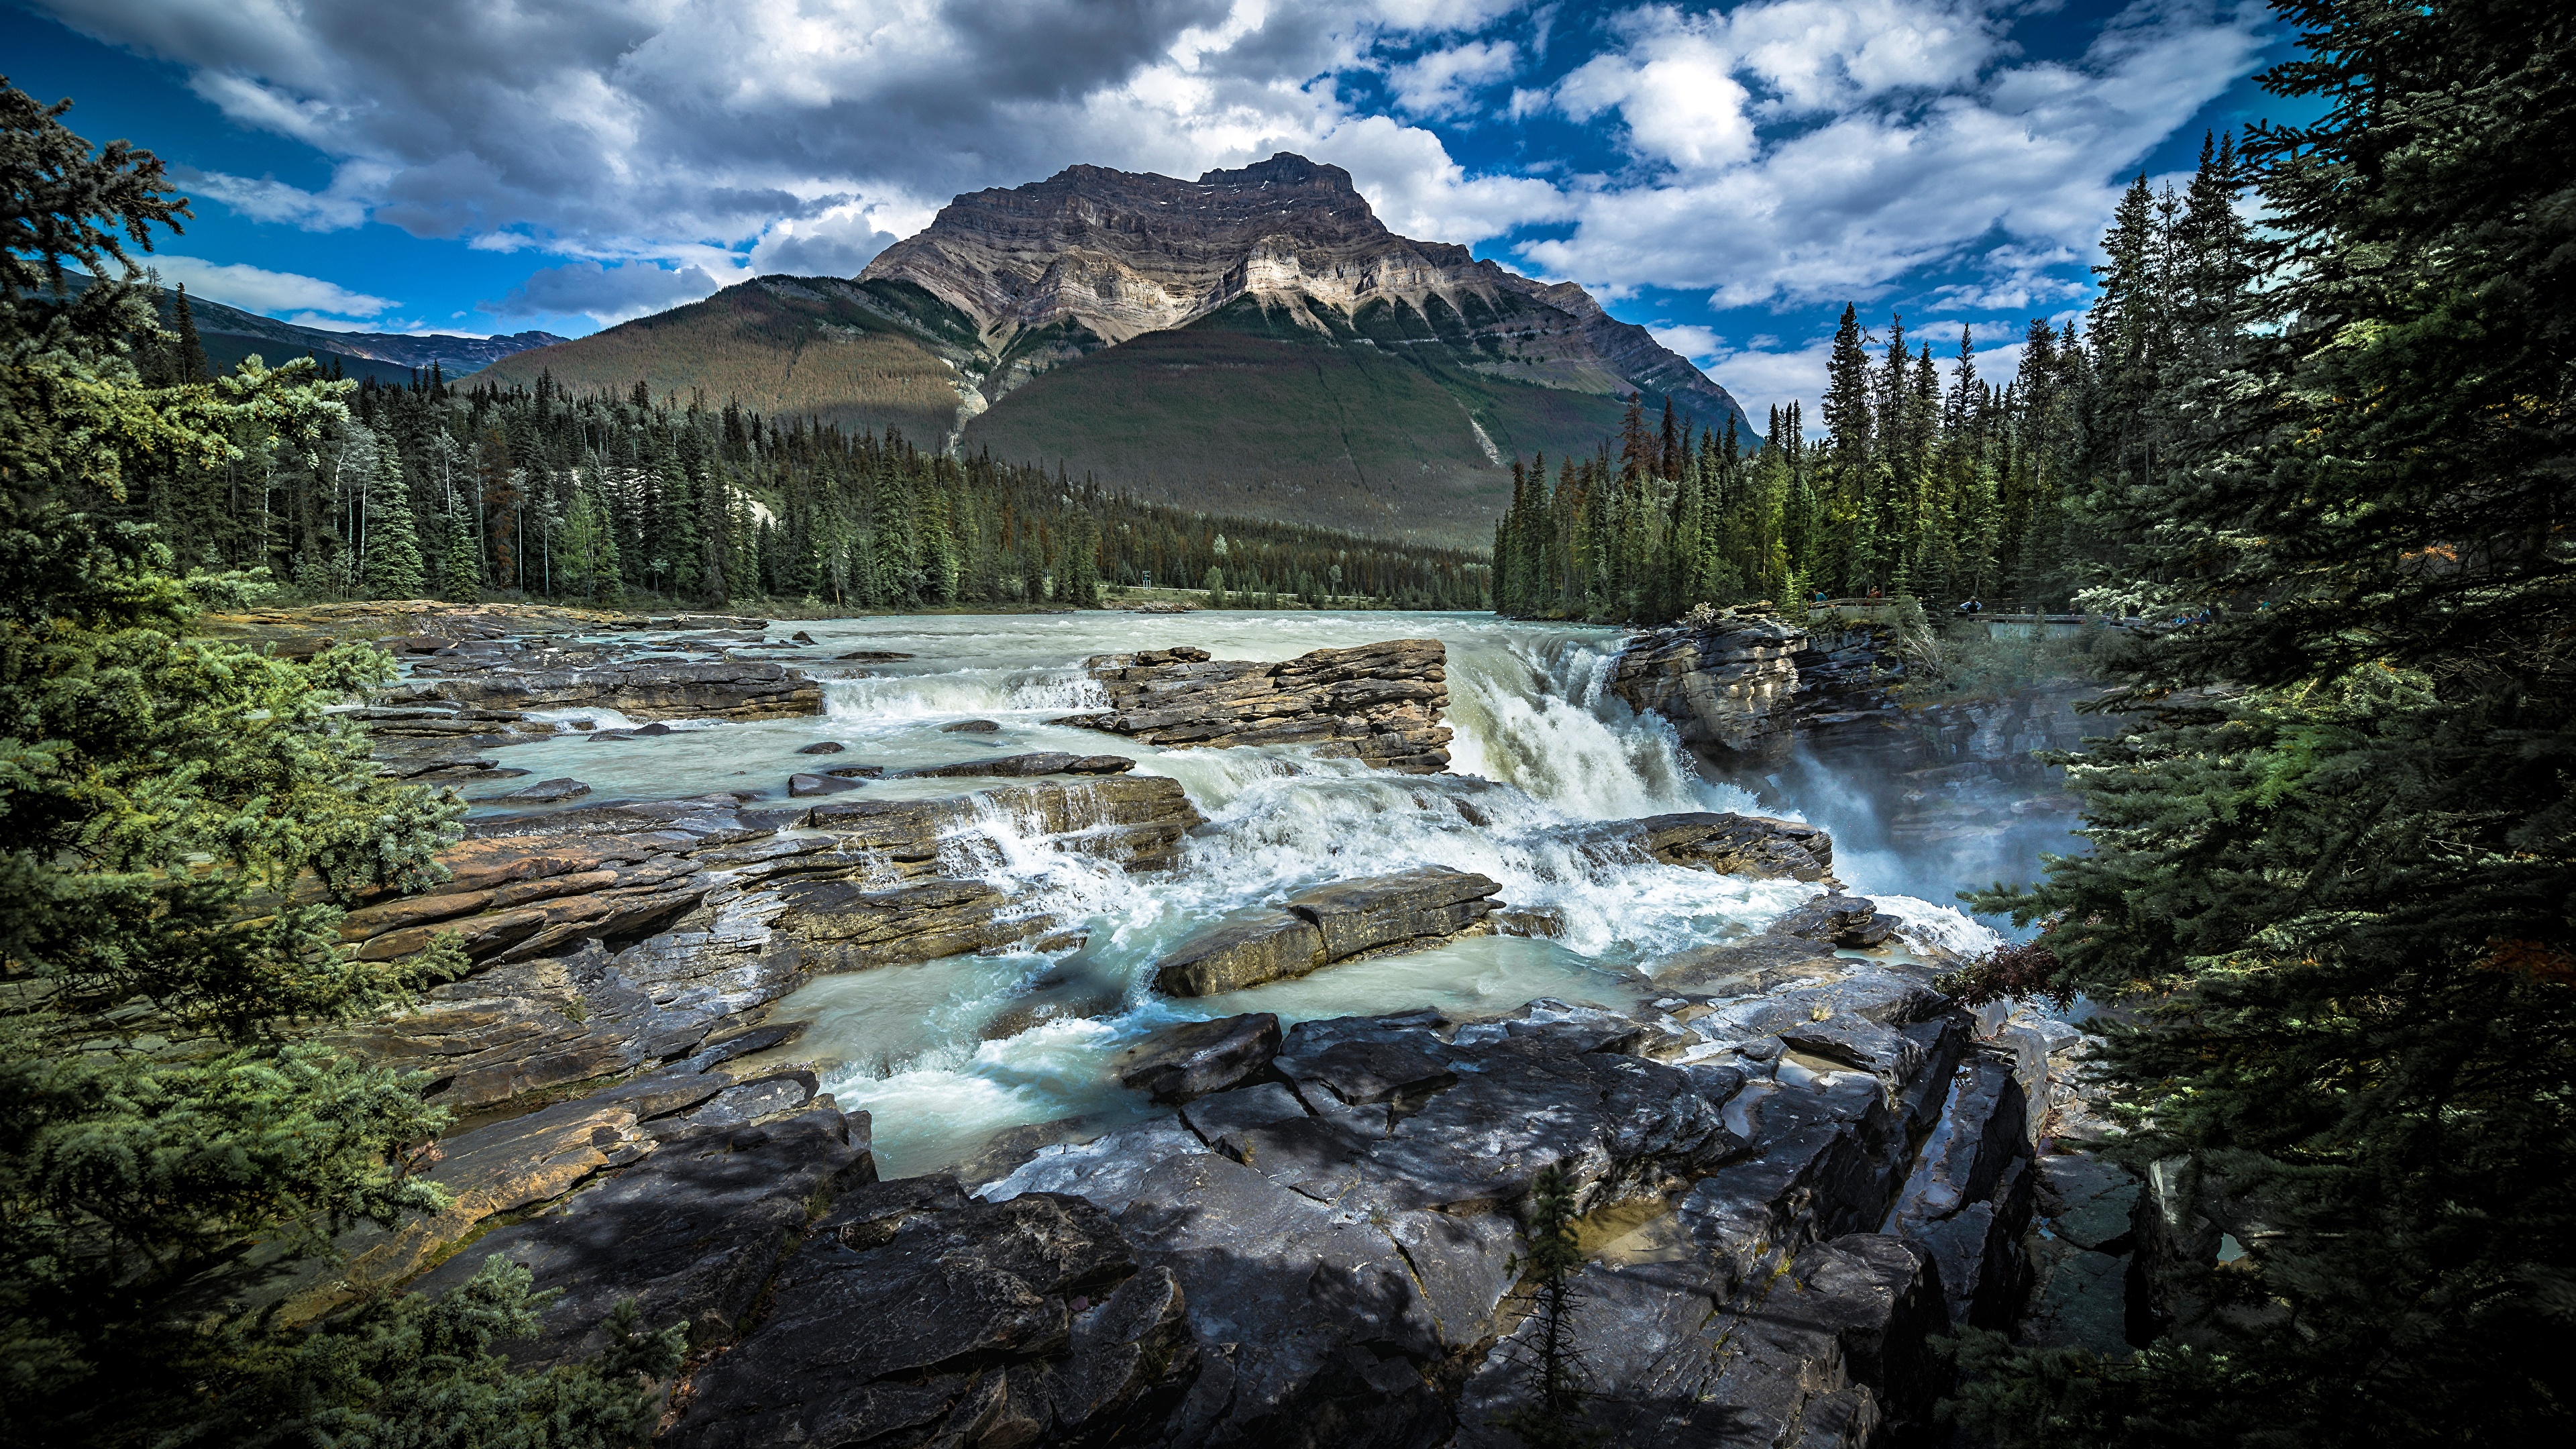 壁紙 3840x2160 カナダ 公園 山 川 石 風景写真 Alberta 雲 ジャスパー国立公園 自然 ダウンロード 写真